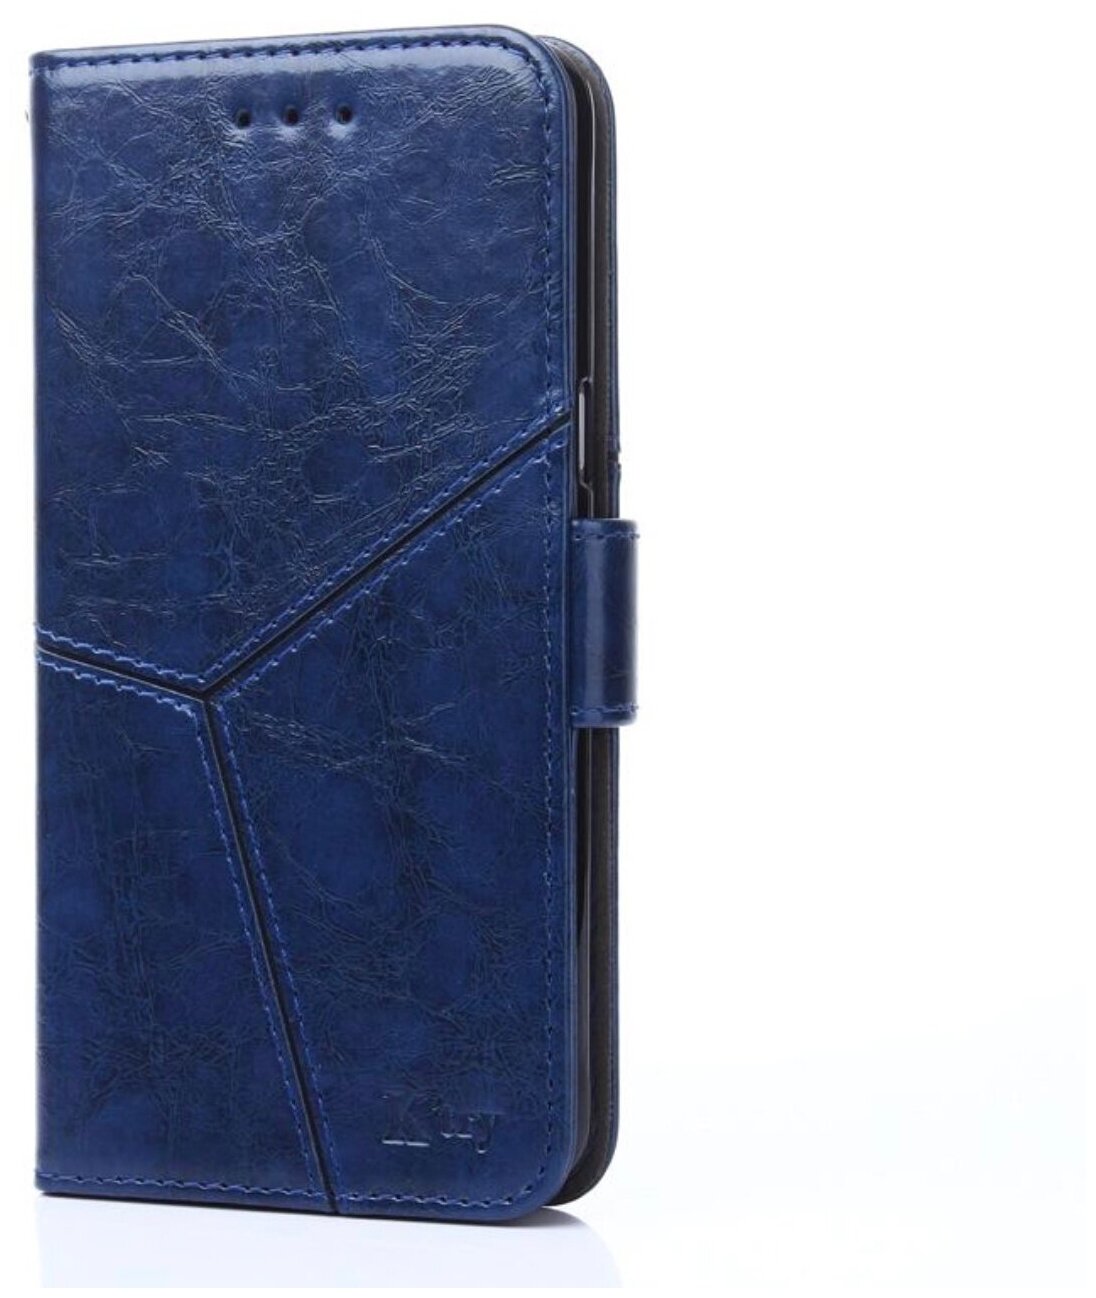 Чехол-книжка Чехол. ру для Samsung Galaxy S9 Plus прошитый по контуру с необычным геометрическим швом синий